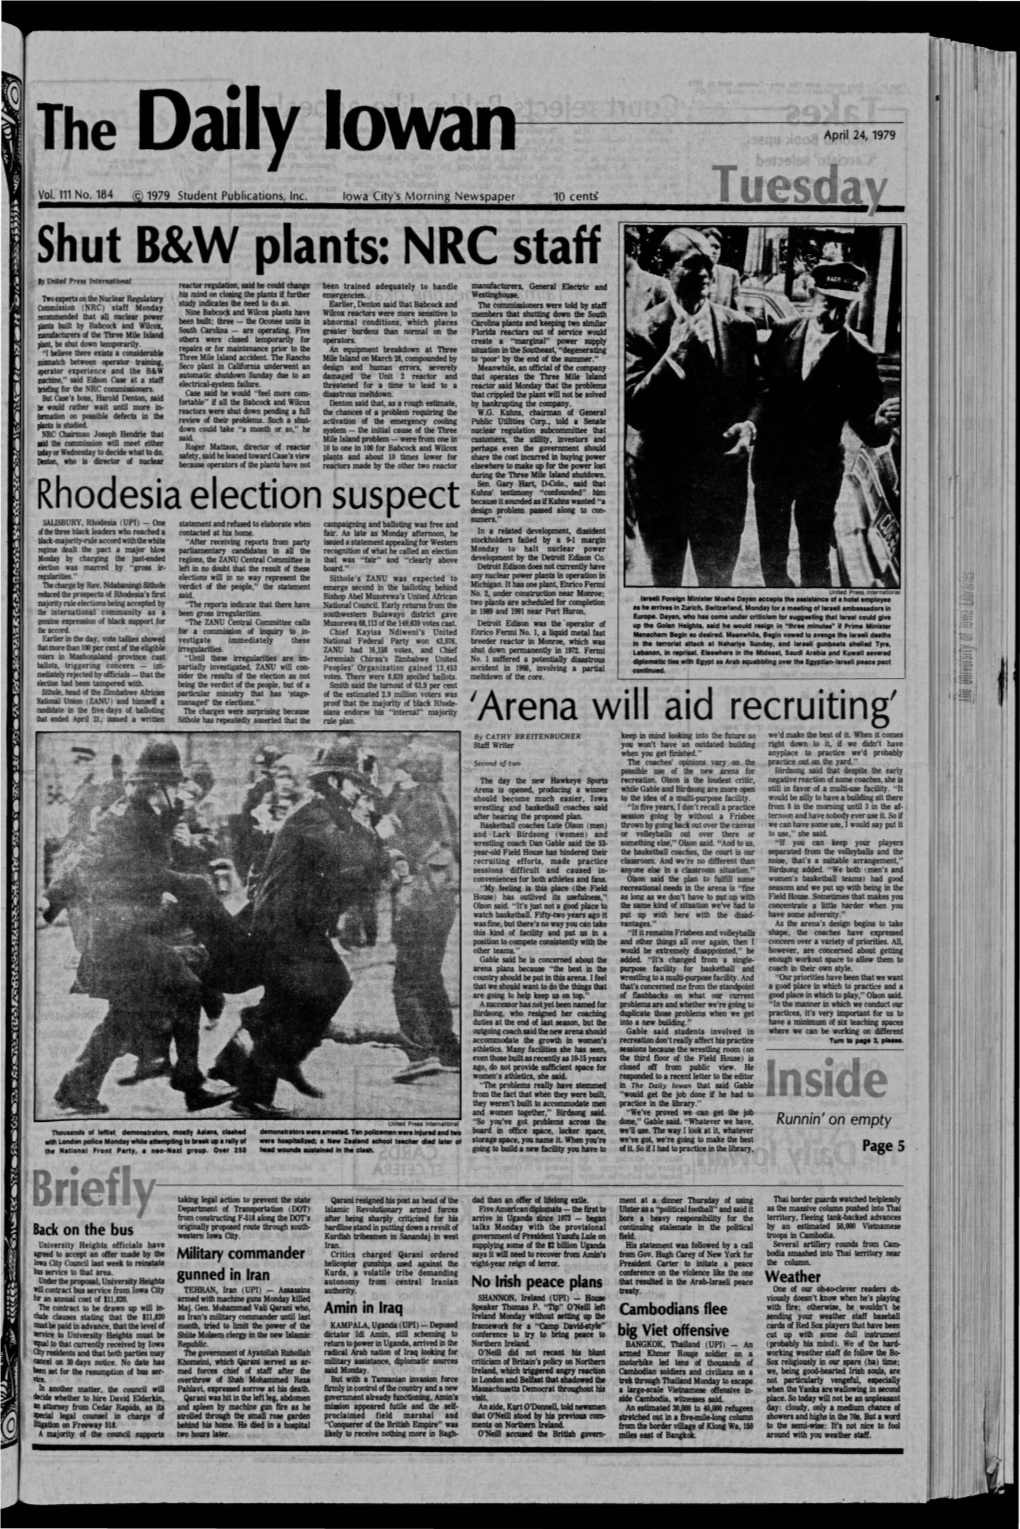 Daily Iowan (Iowa City, Iowa), 1979-04-24